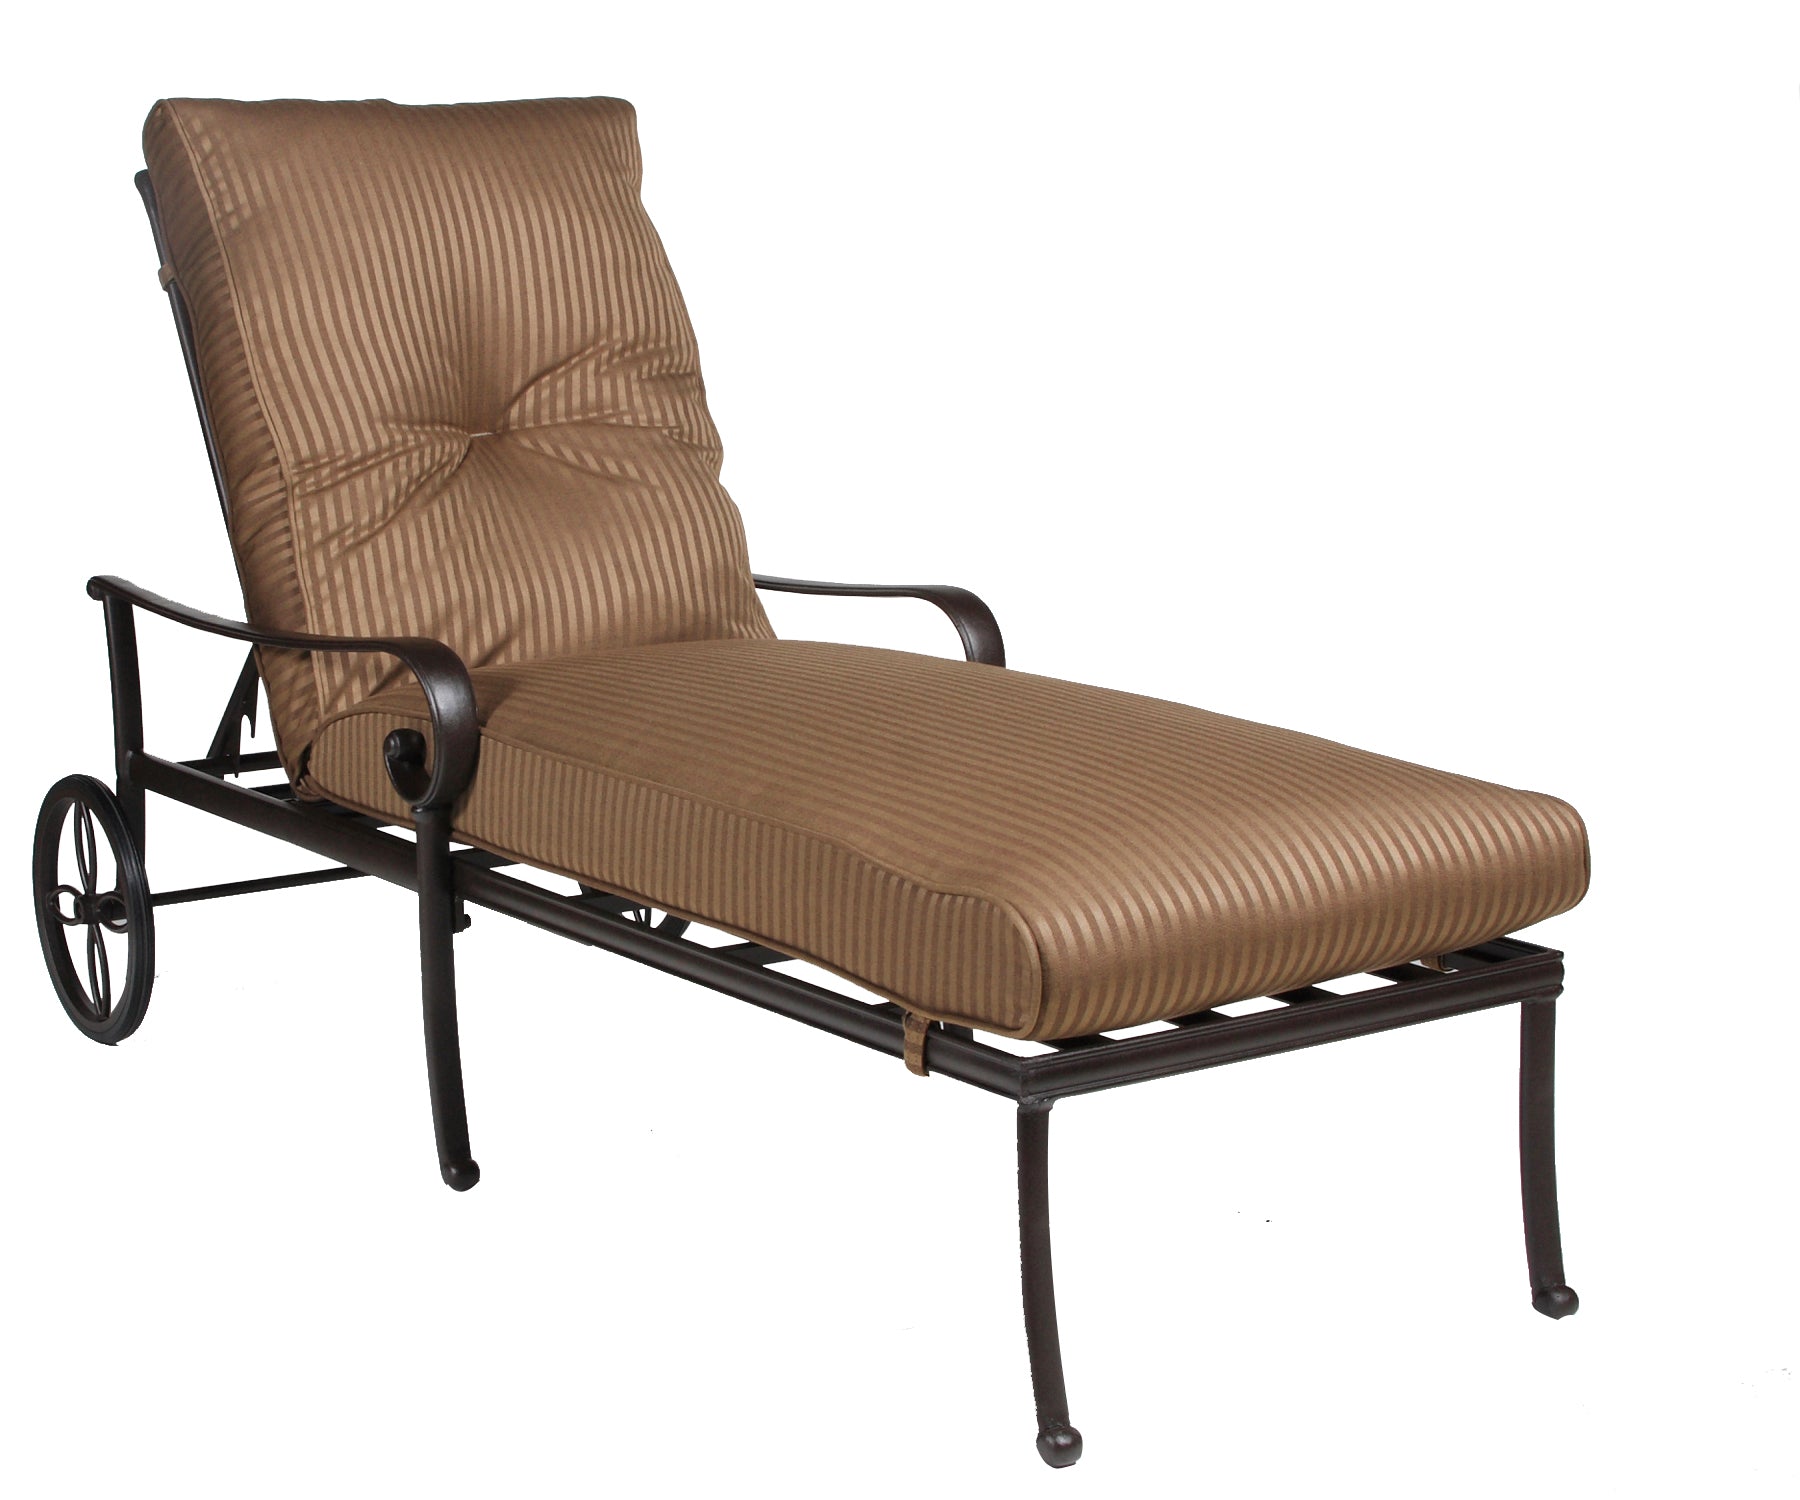 Santa Barbara Chaise Lounge with Cushion (Terra Mist)